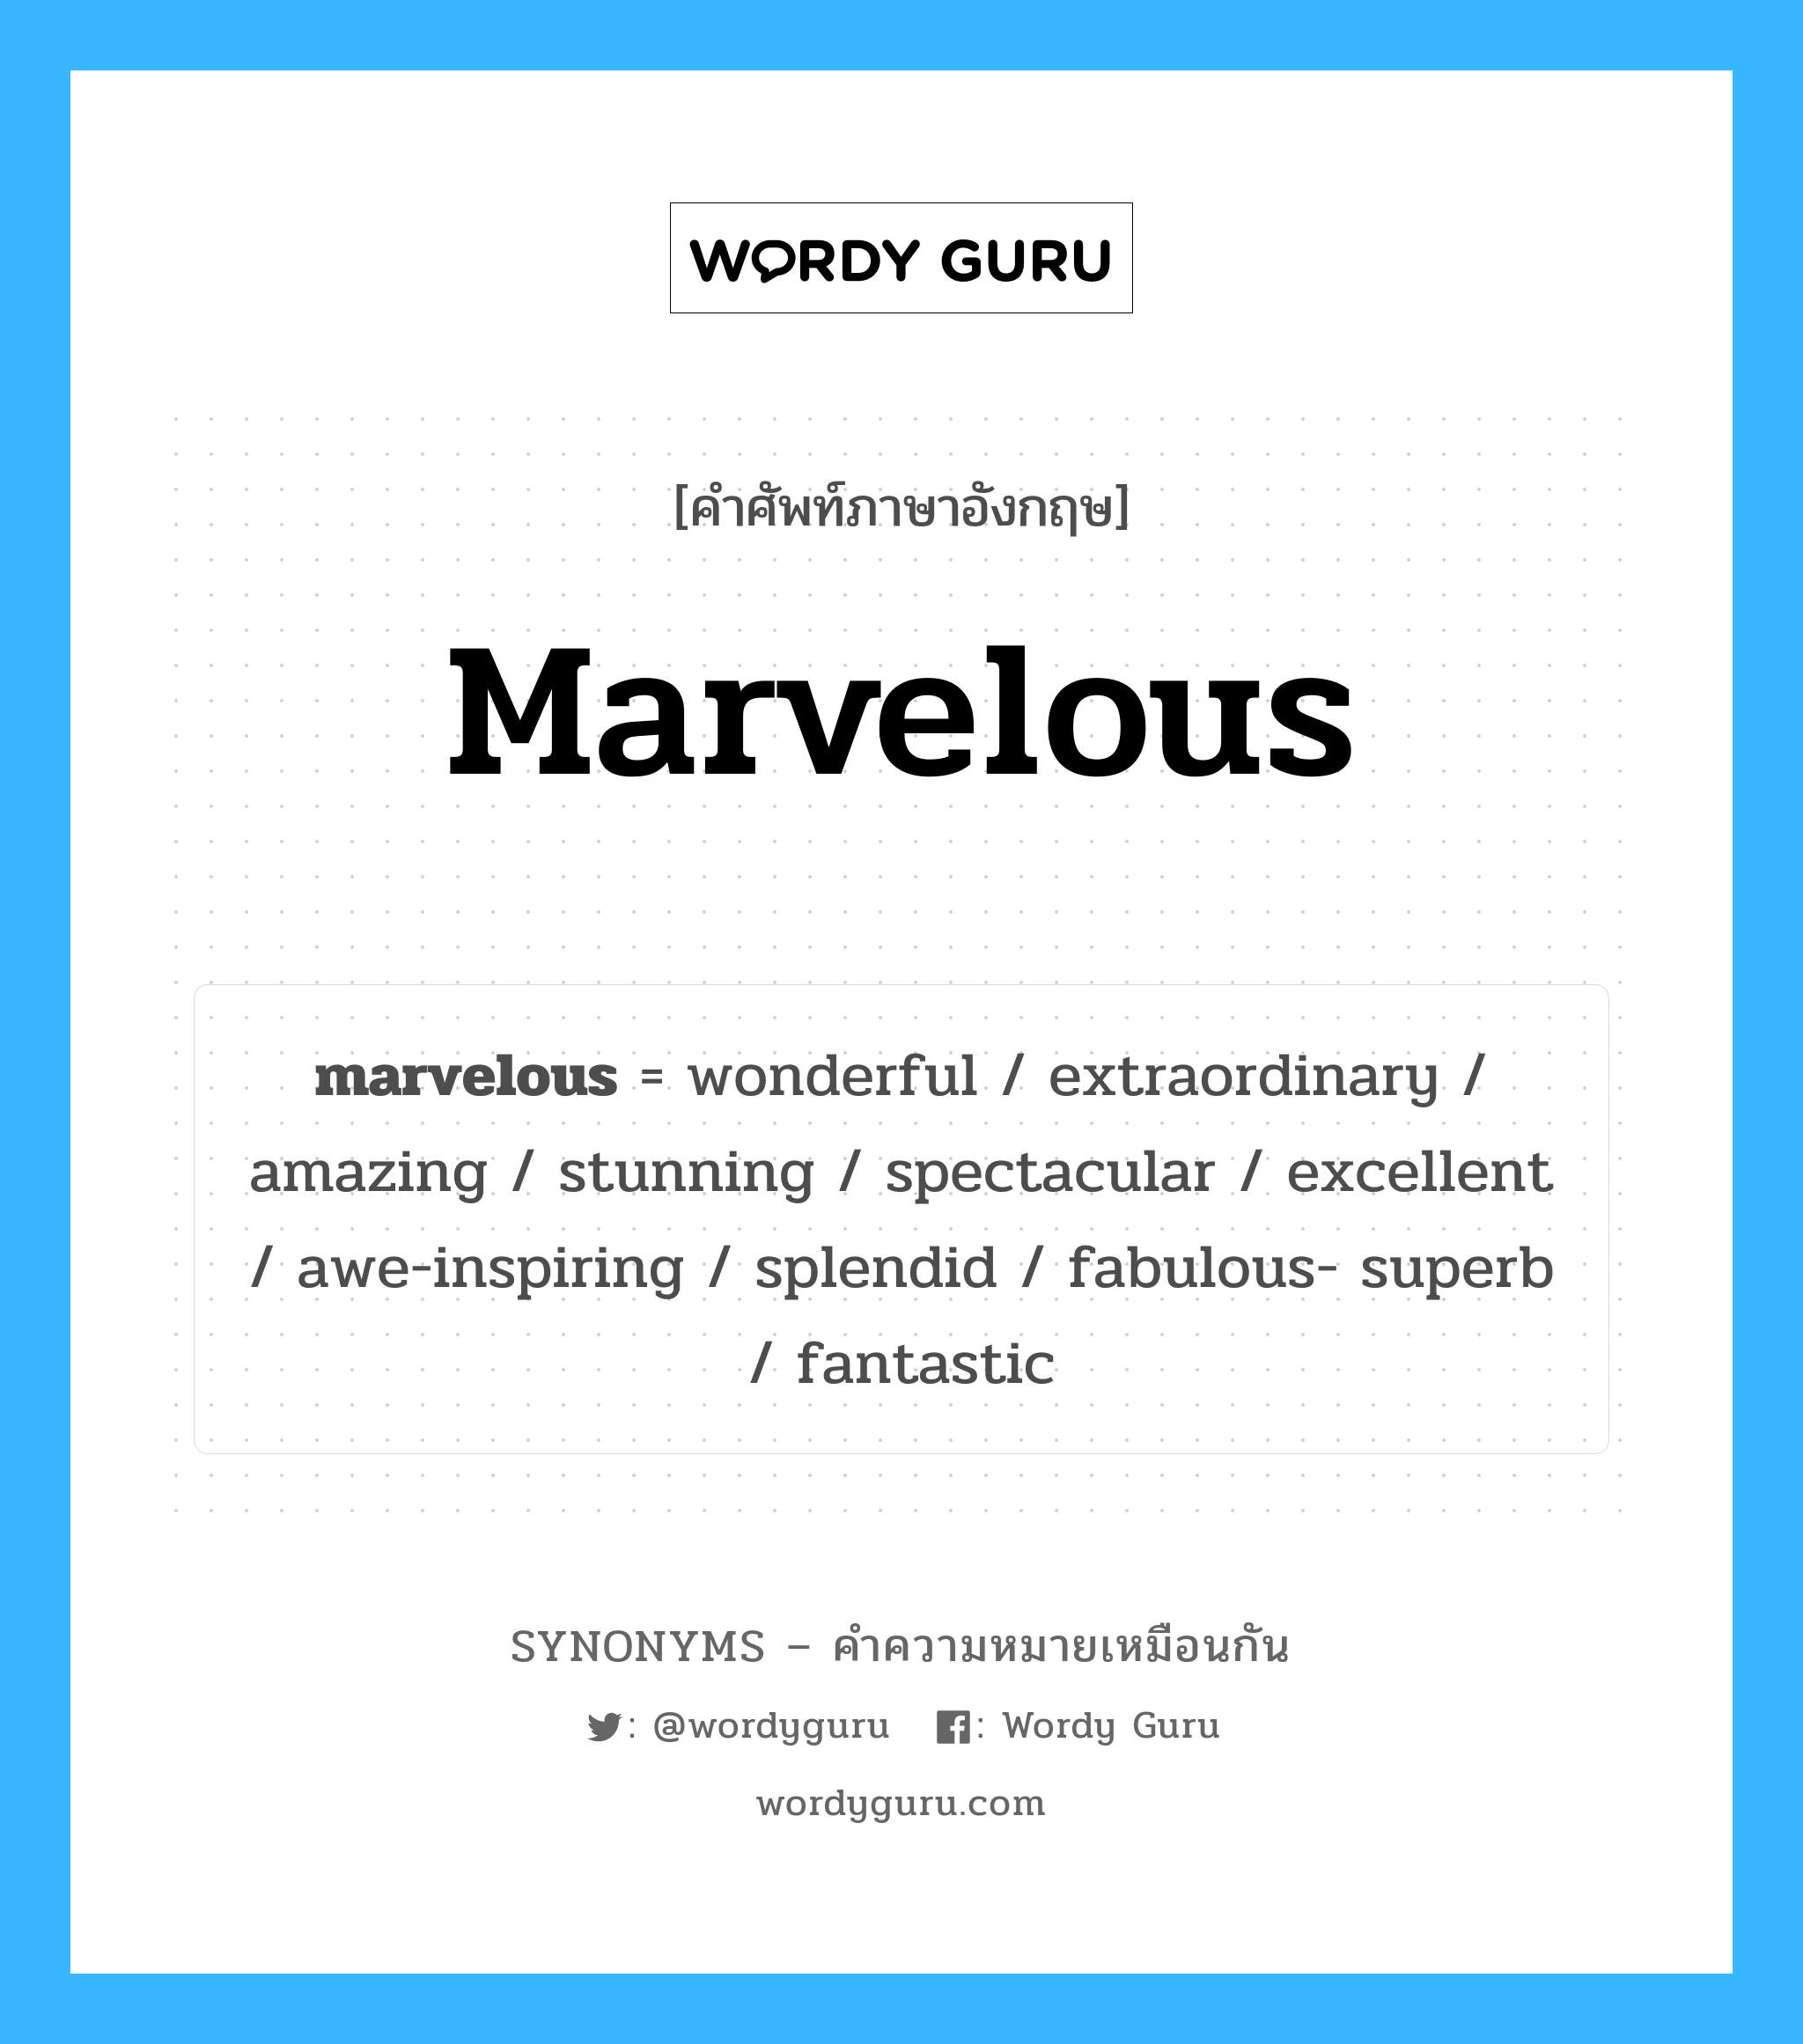 fabulous- superb เป็นหนึ่งใน marvelous และมีคำอื่น ๆ อีกดังนี้, คำศัพท์ภาษาอังกฤษ fabulous- superb ความหมายคล้ายกันกับ marvelous แปลว่า ดี - ดีมาก หมวด marvelous